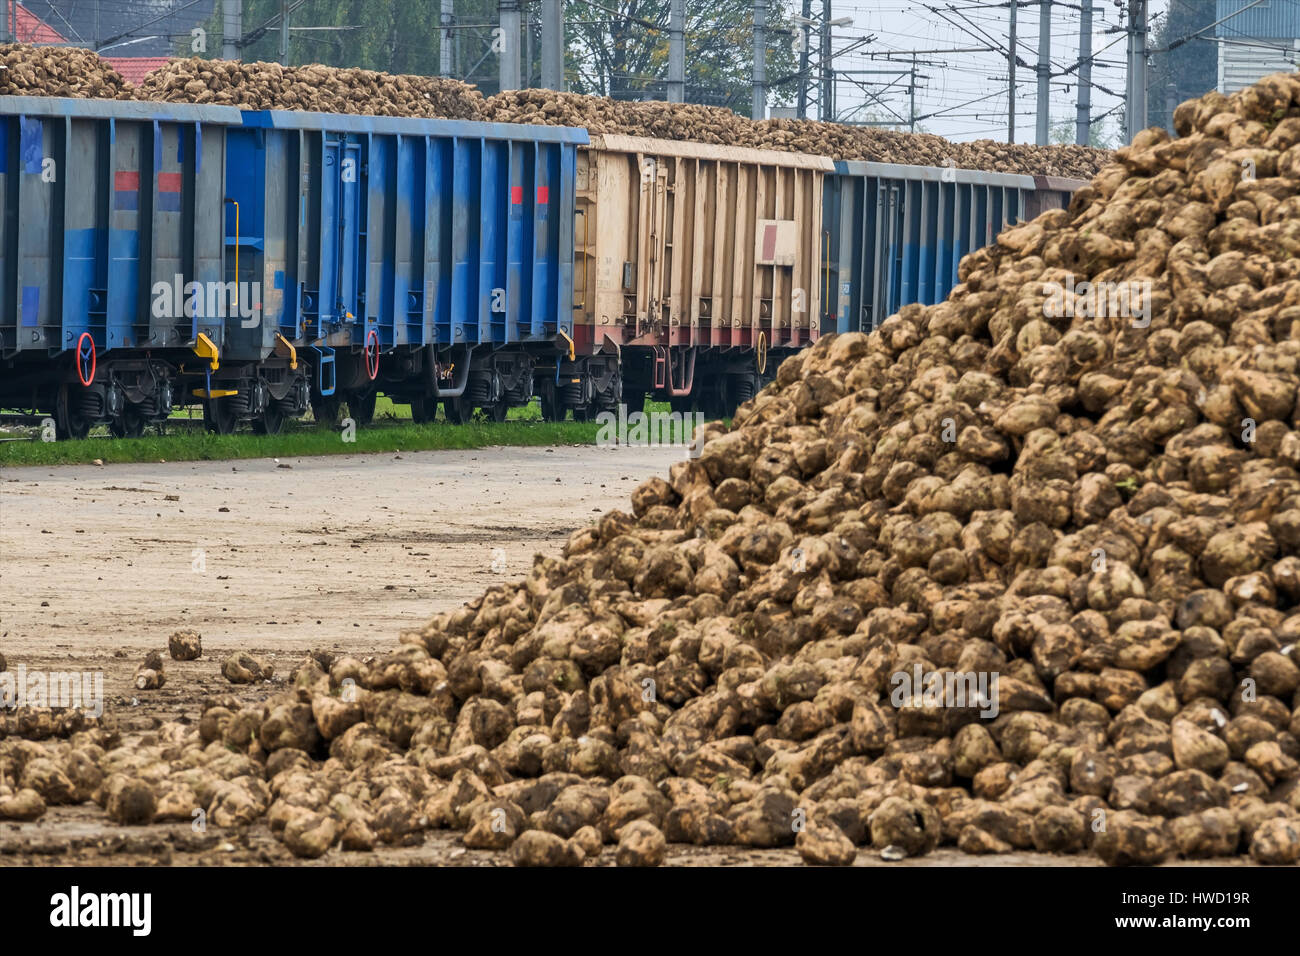 Zuckerrüben und waren zu trainieren, symbol für die Ernte, Logistik, wächst wieder Rohstoff, Zuckerrüben Und Güterzug, Symbol Für Ernte, Logistik, nachwach Stockfoto